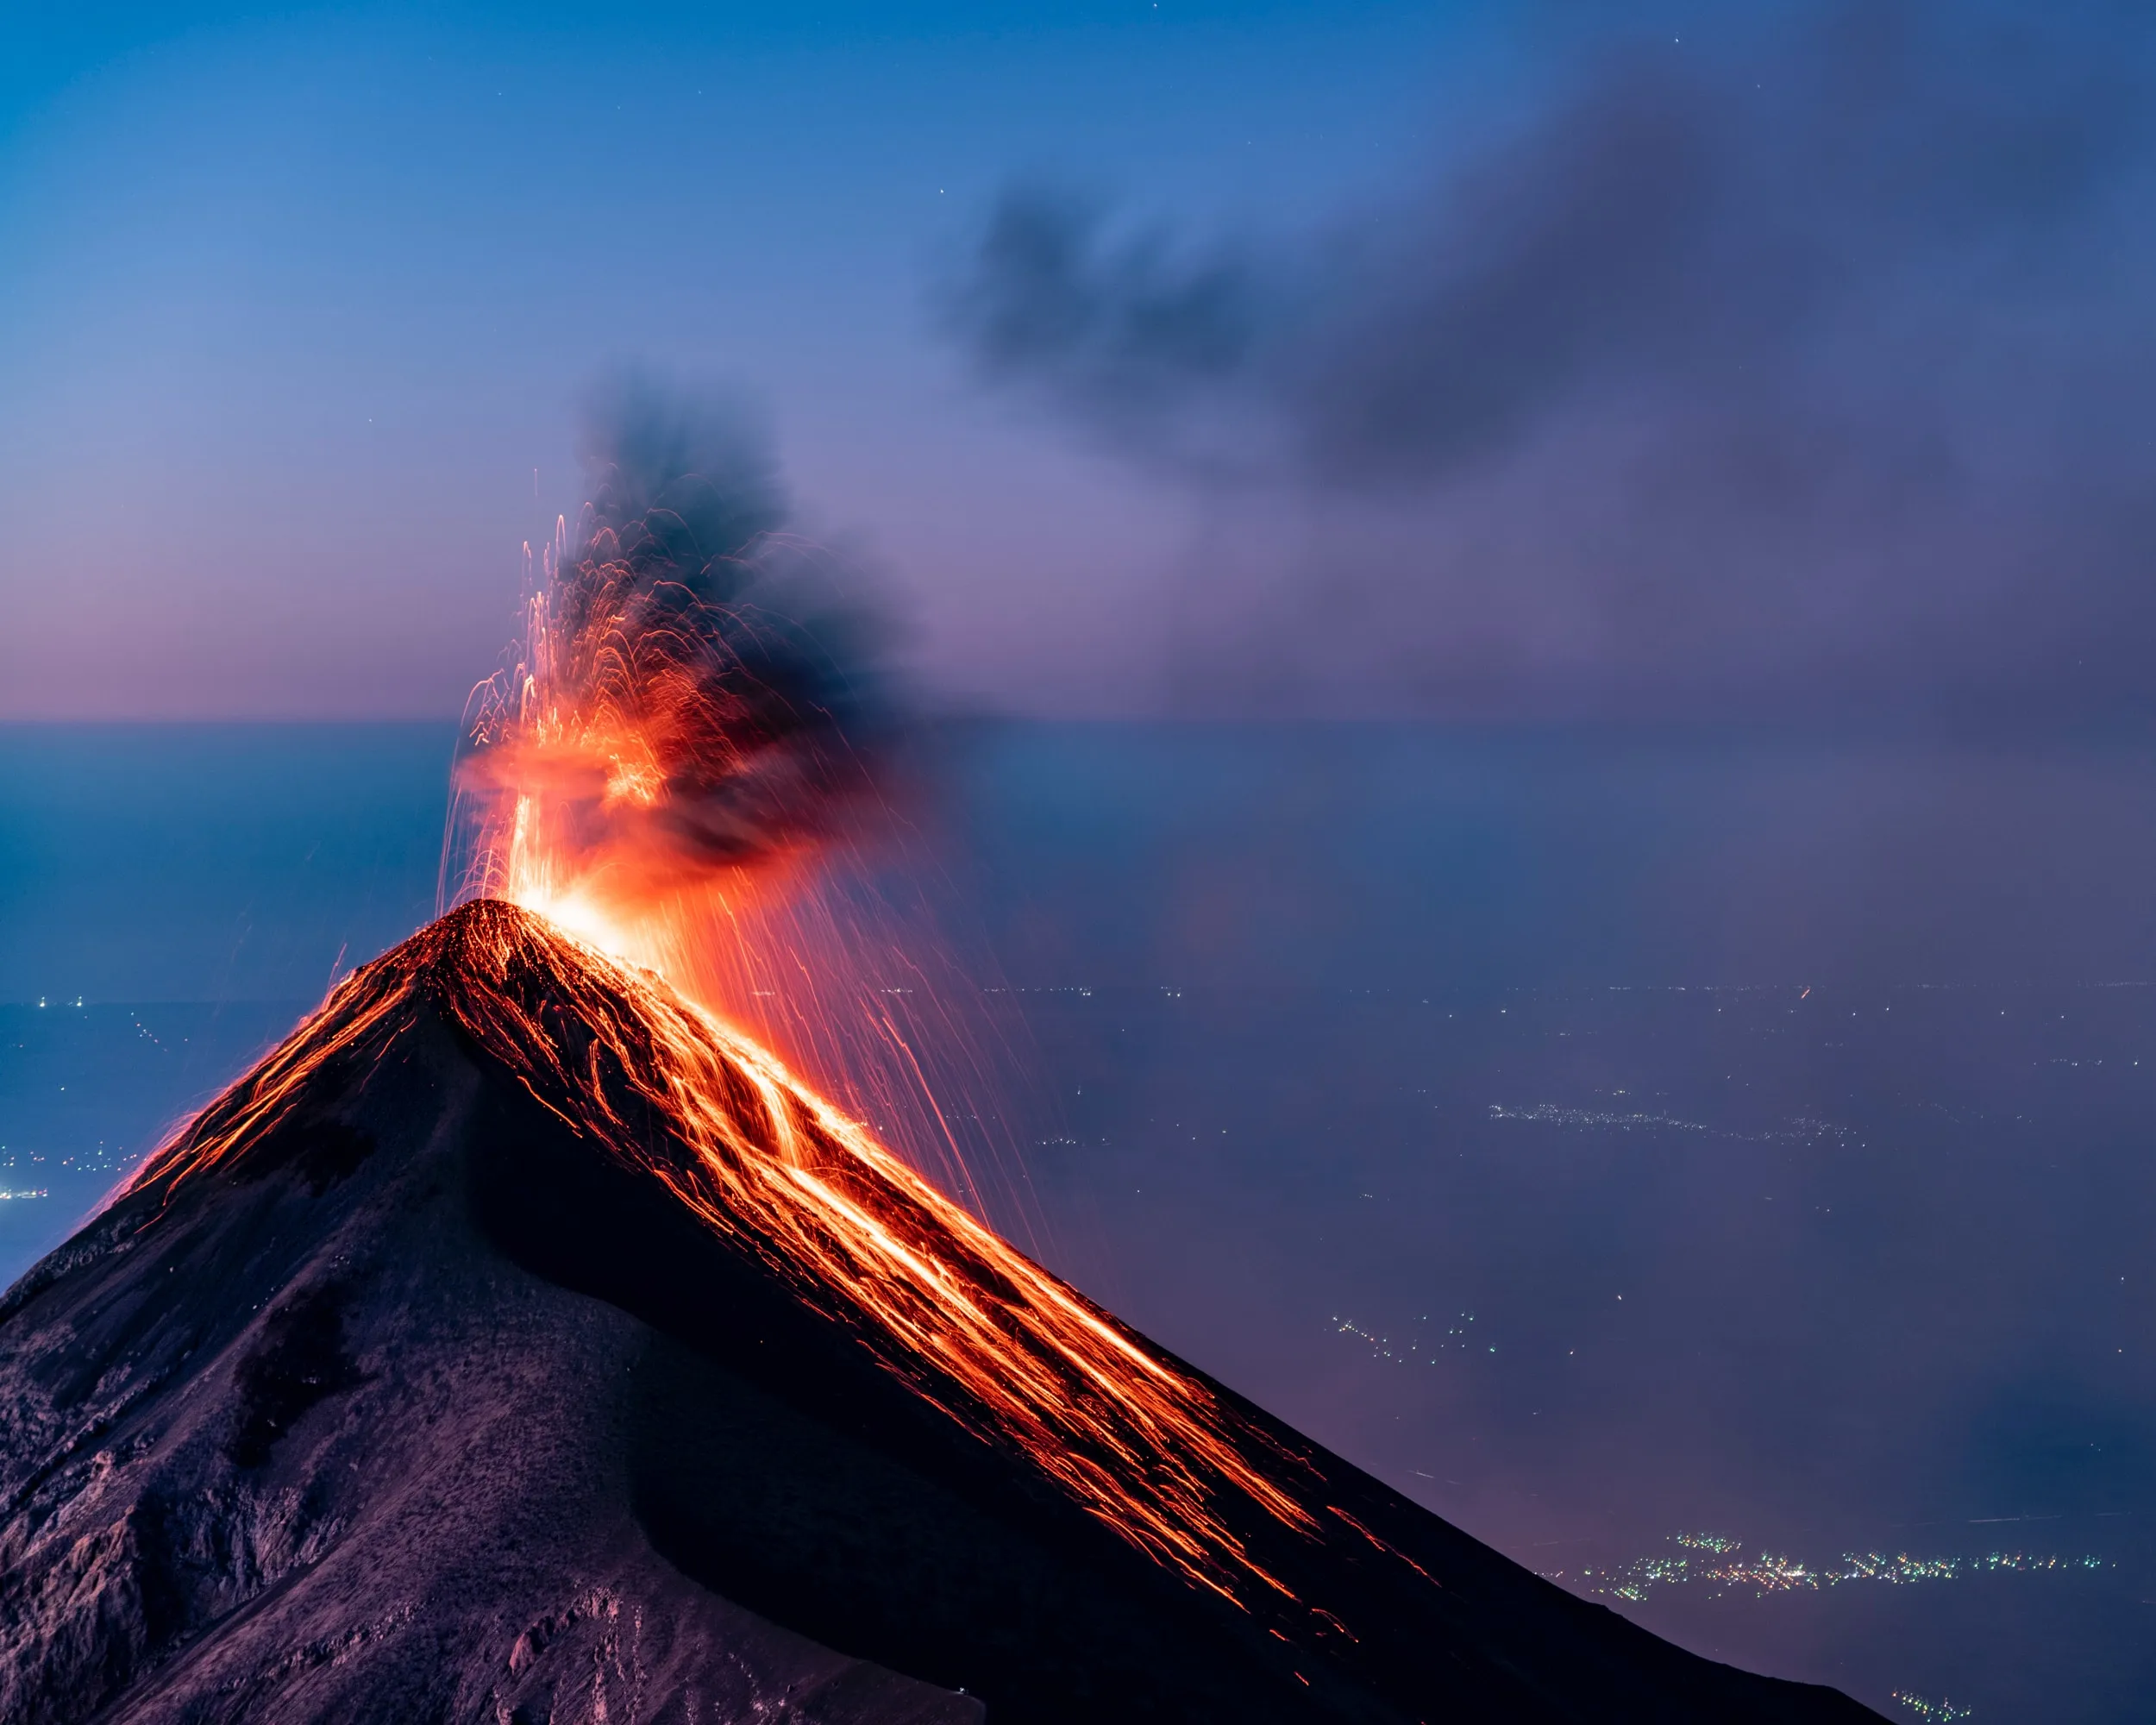 Hình nền đẹp chất lượng cao cho iPhone, iPad và Mac chủ đề núi lửa hùng vỹ